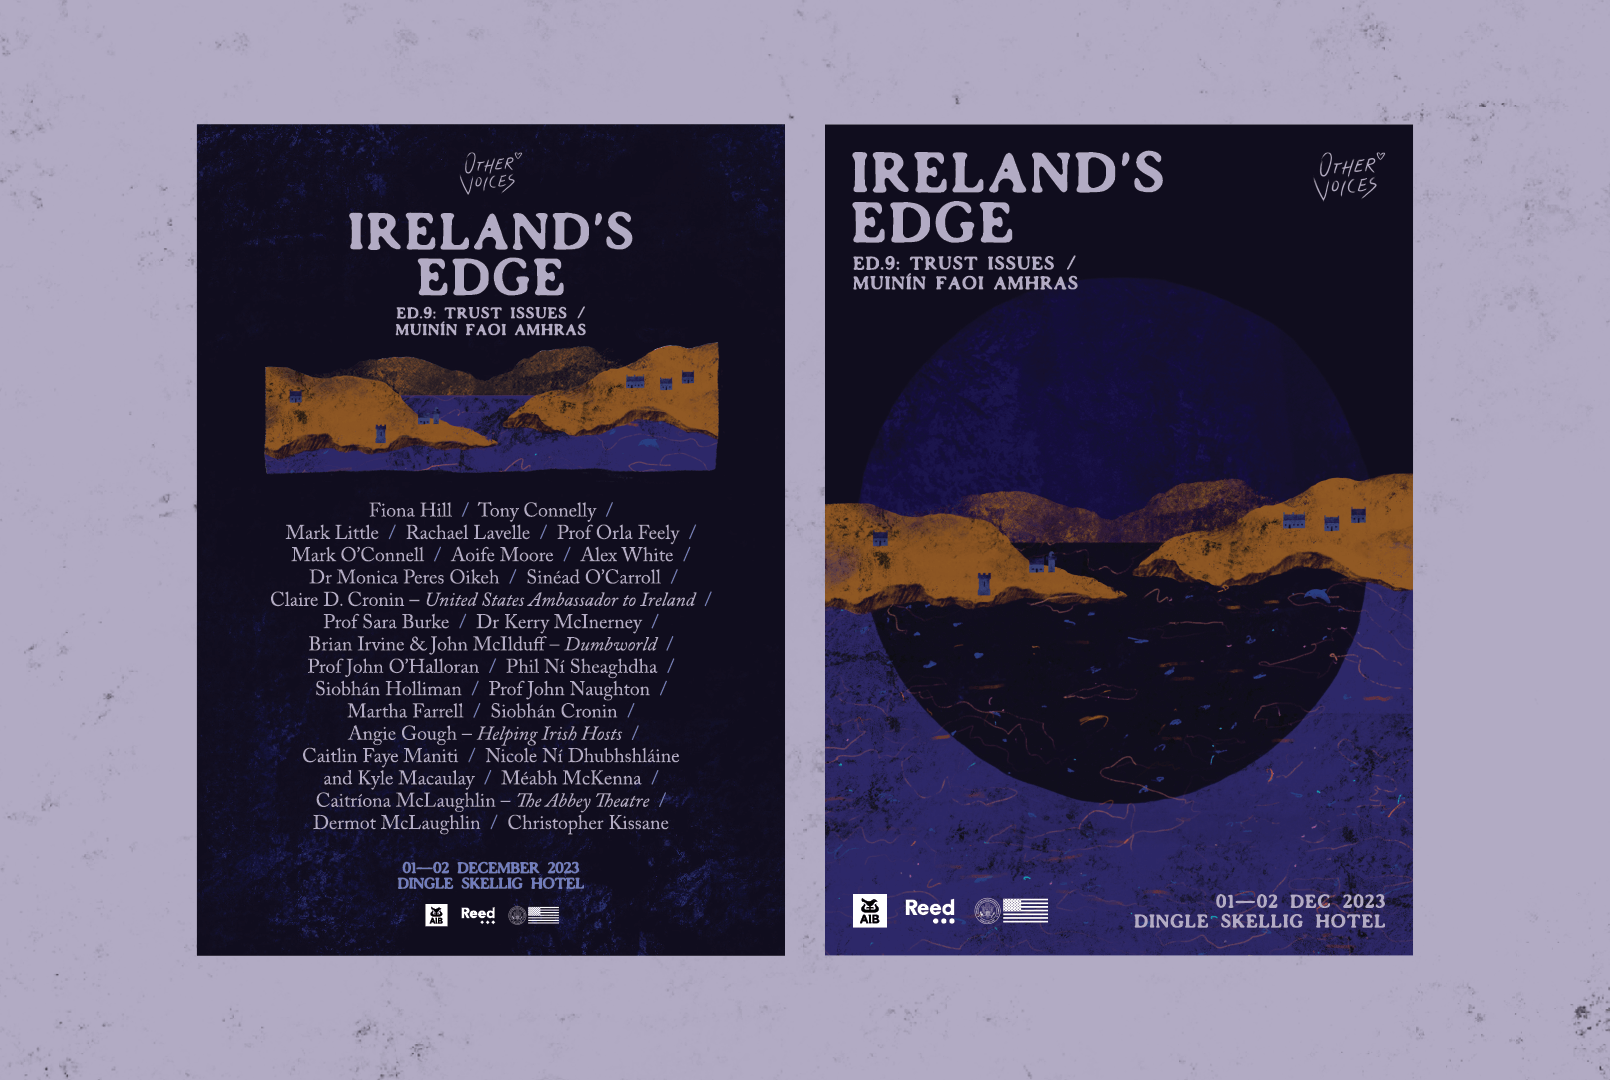 IRELAND'S EDGE